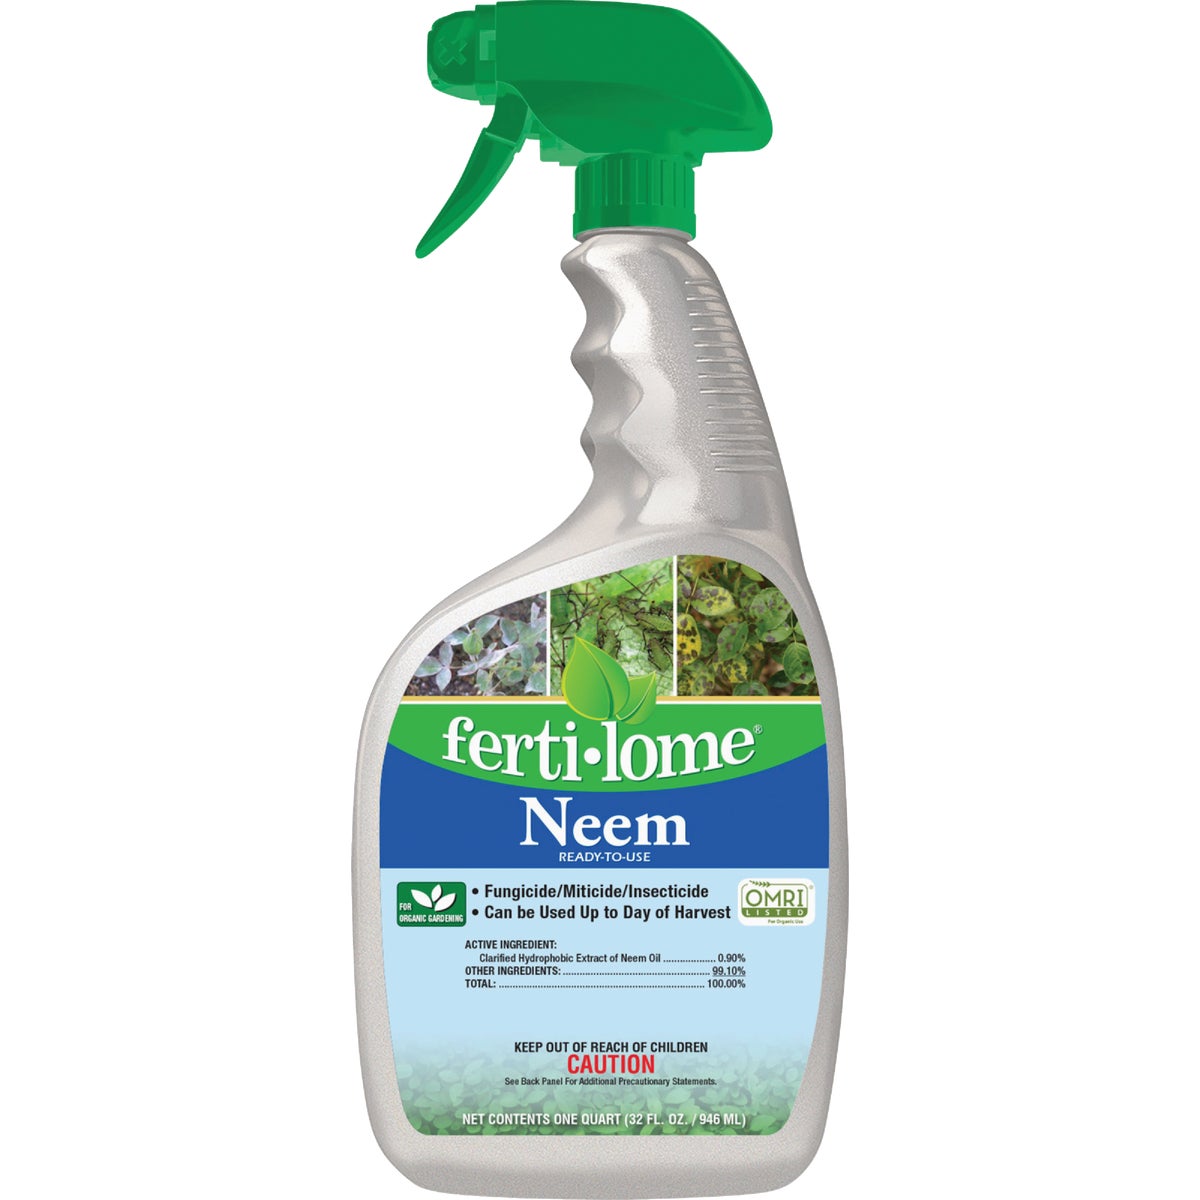 Ferti-lome 32 Oz. Trigger Spray Neem Oil Fungicide/Miticide/Insecticide